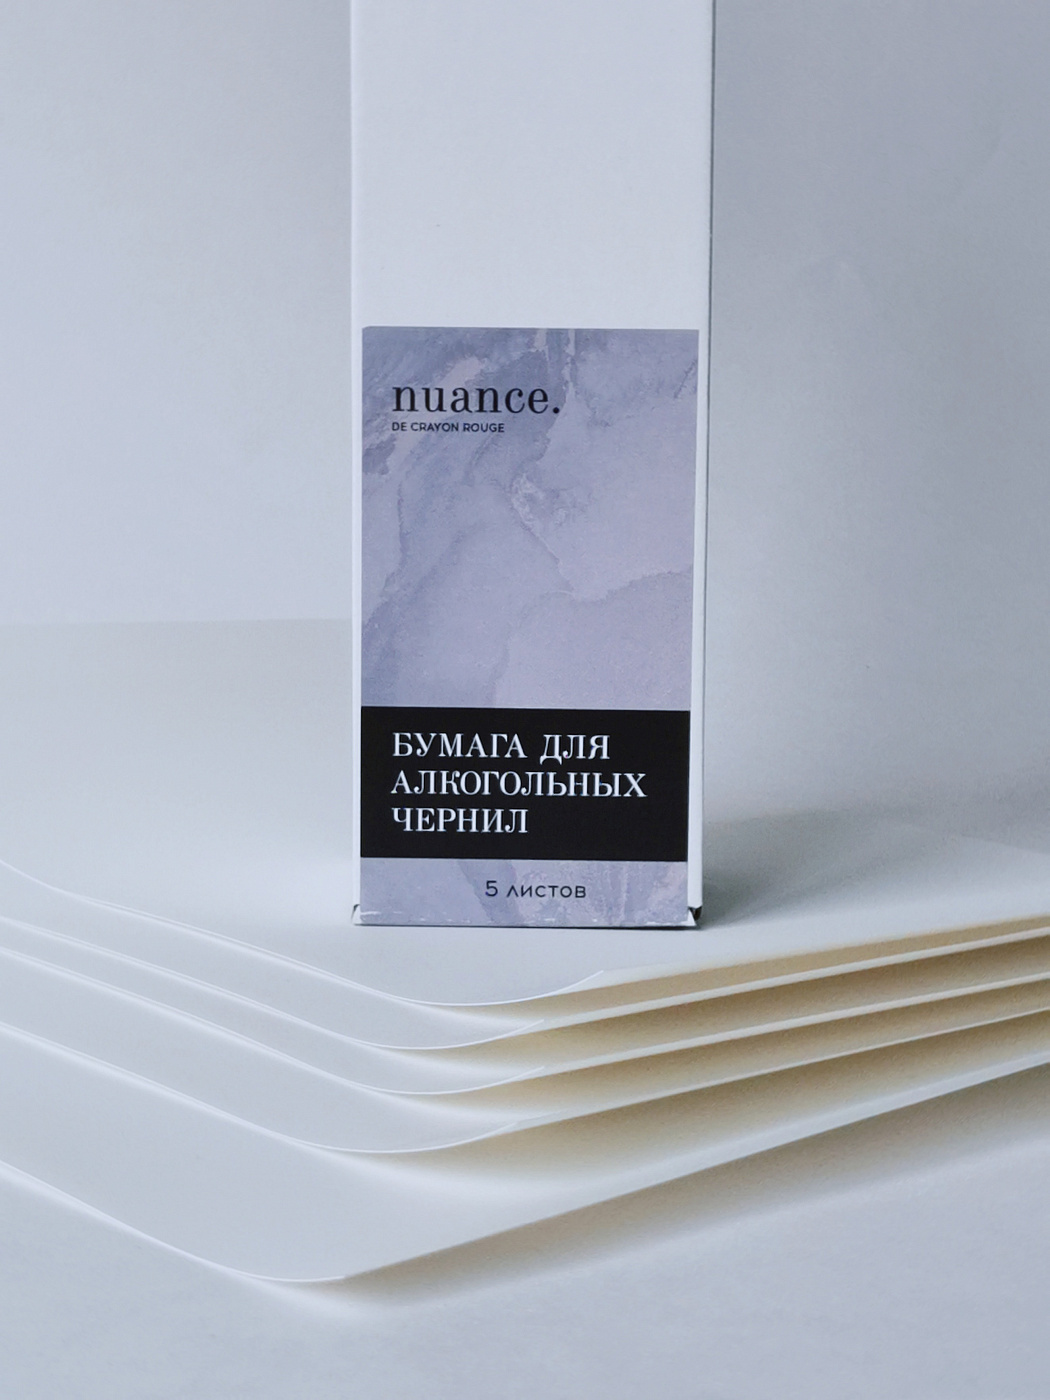 Набор бумаги синтетической (для алкогольных чернил), nuance., 50 х 70 см, 5 листов